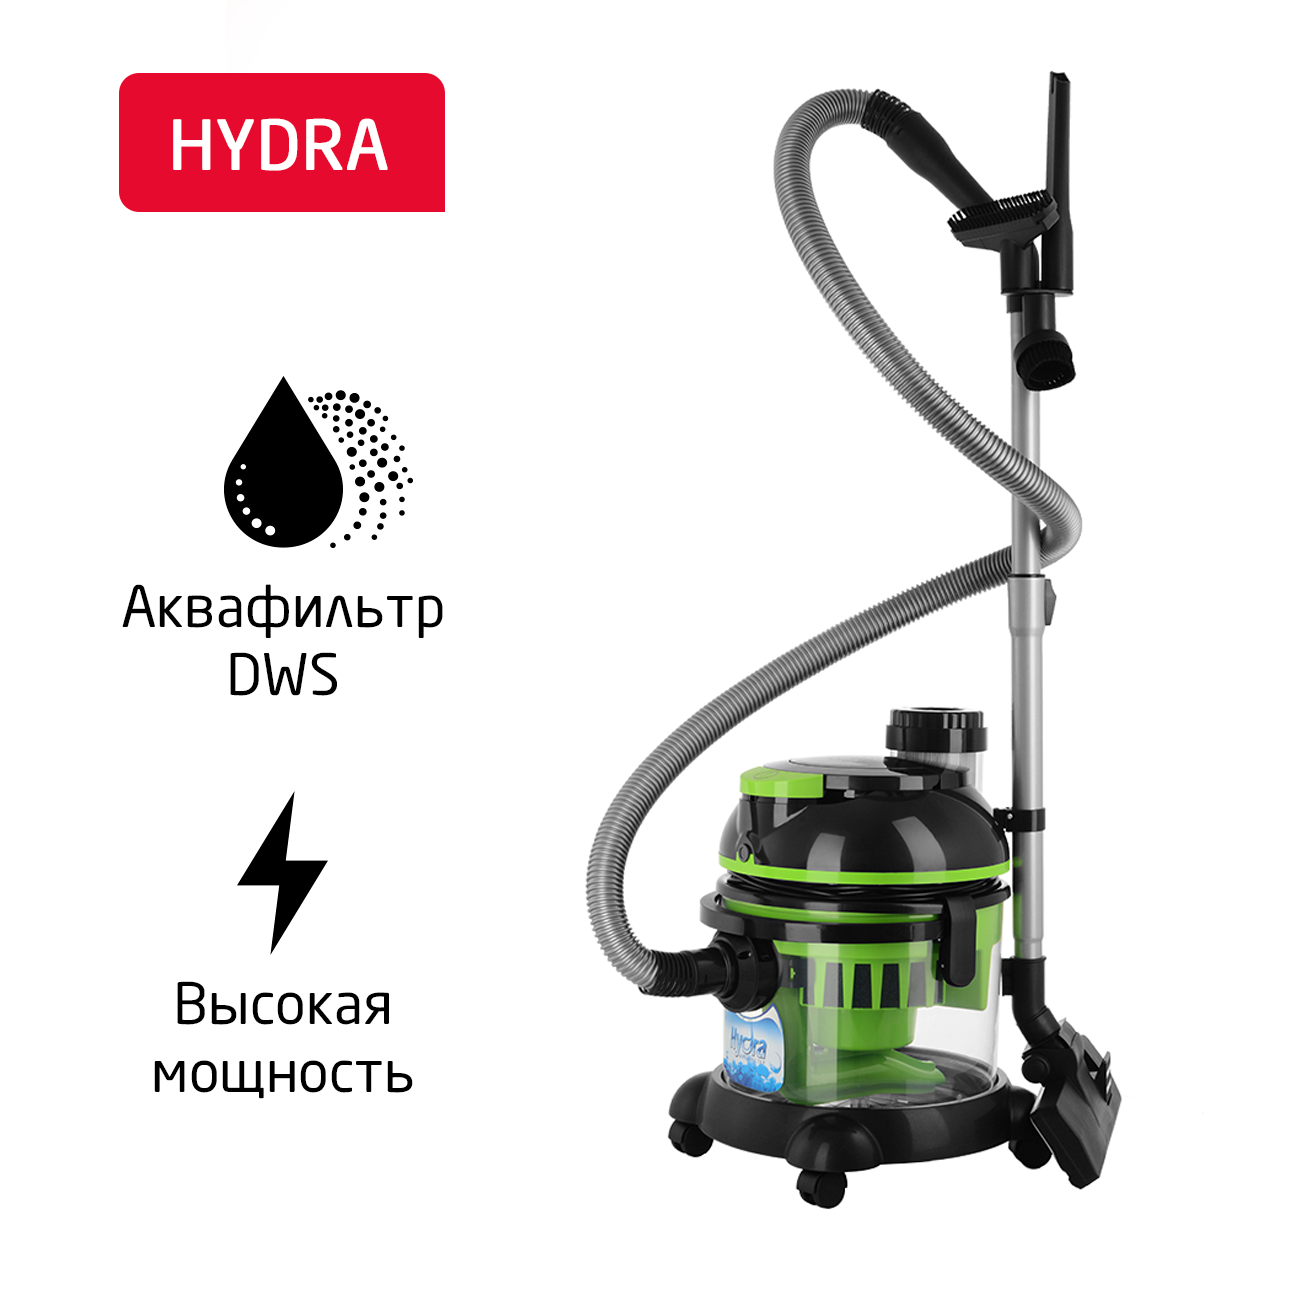 Пылесос ARNICA Hydra зеленый, купить в Москве, цены в интернет-магазинах на Мегамаркет